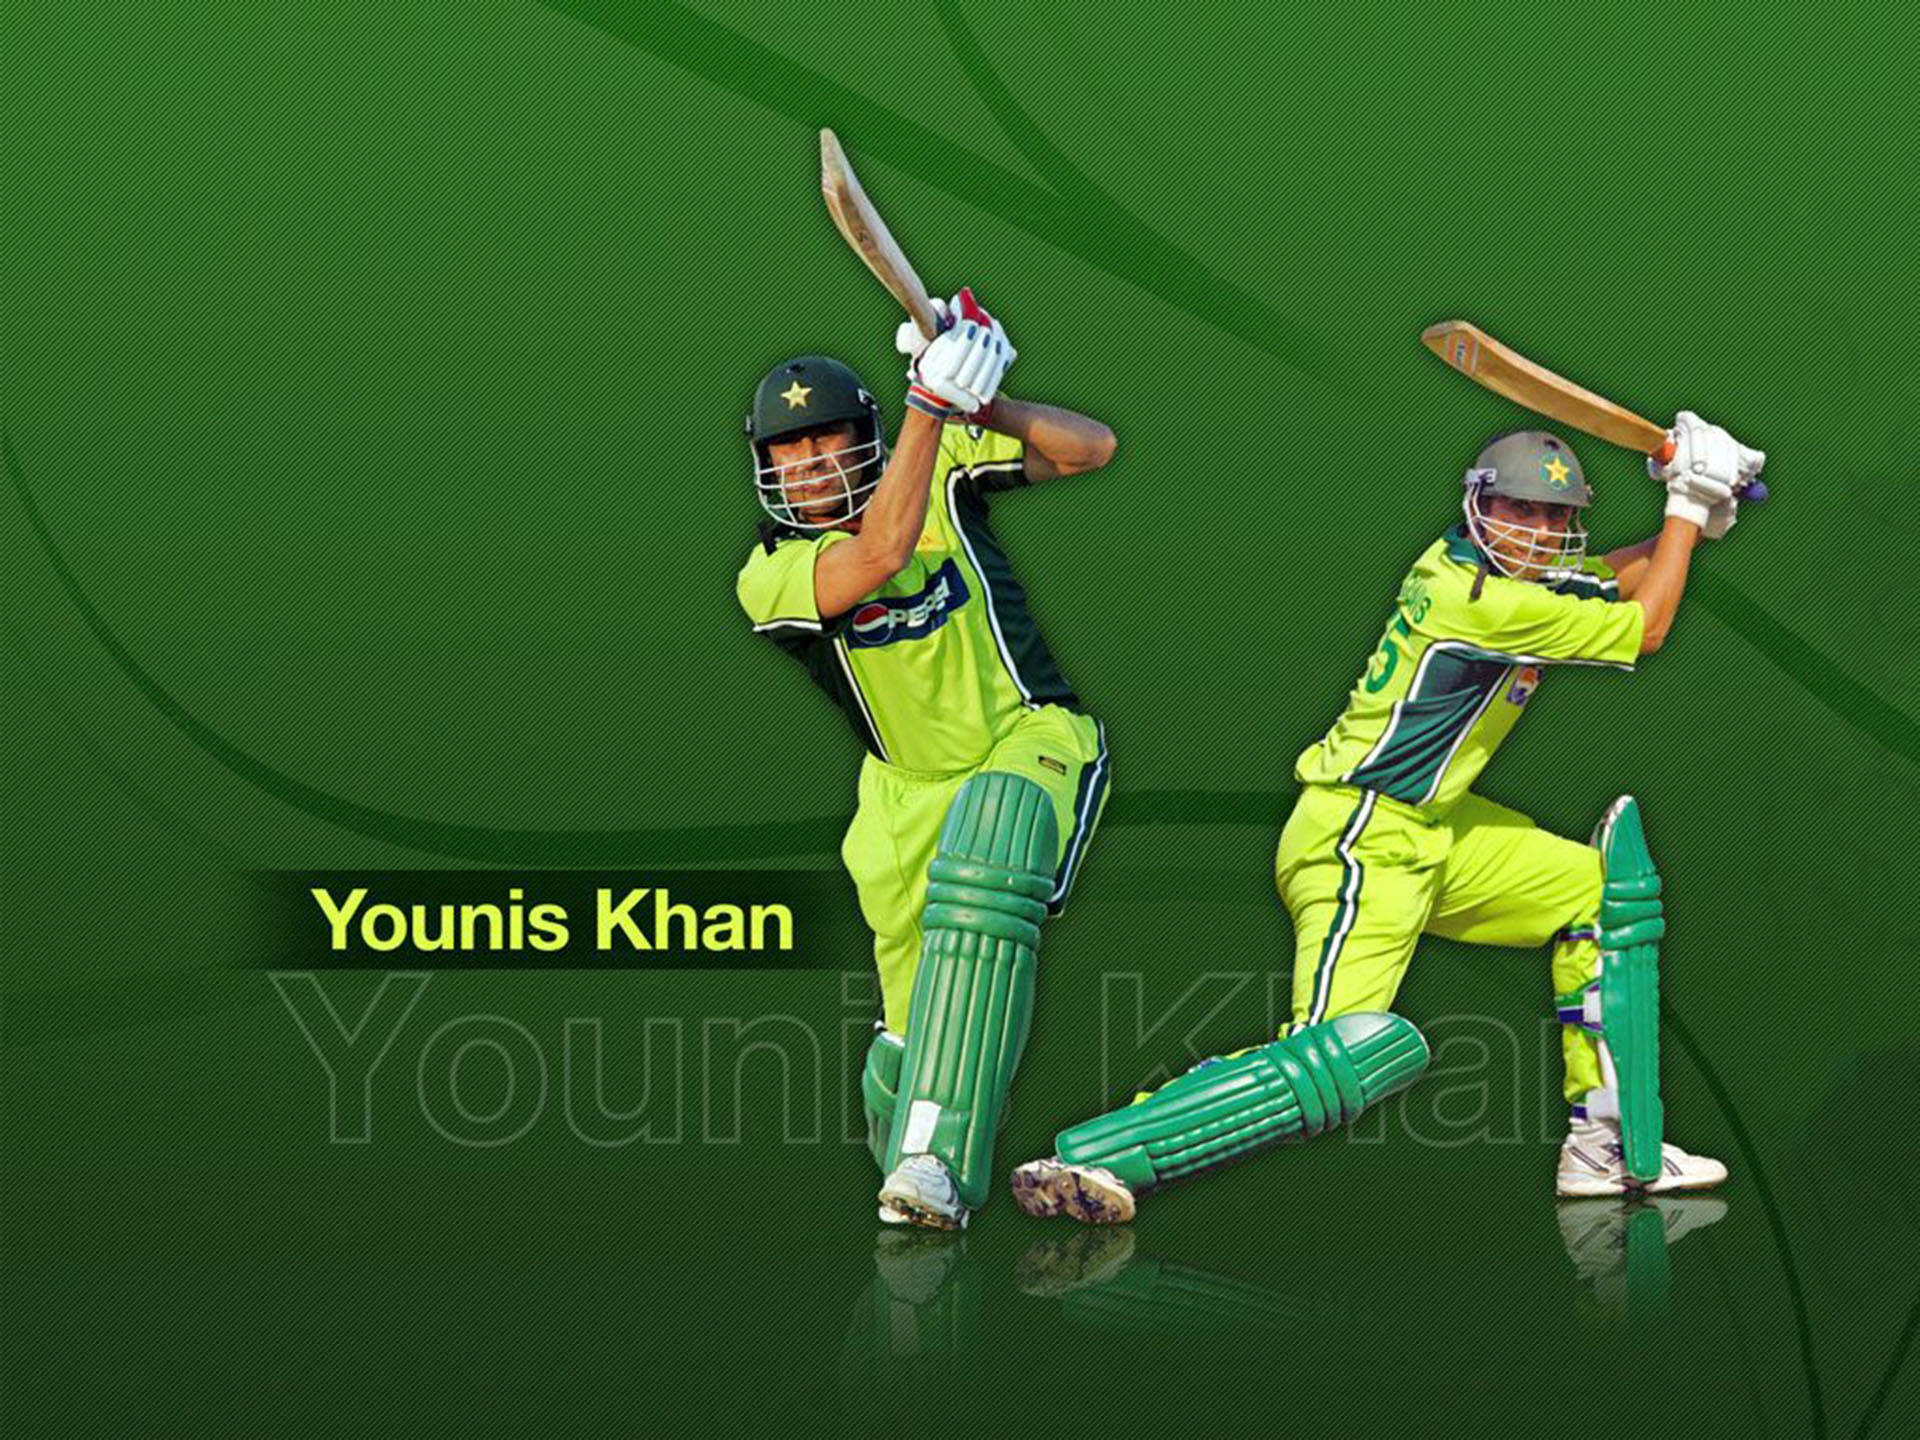 Pakistanischercricket-spieler, Younis Khan Wallpaper